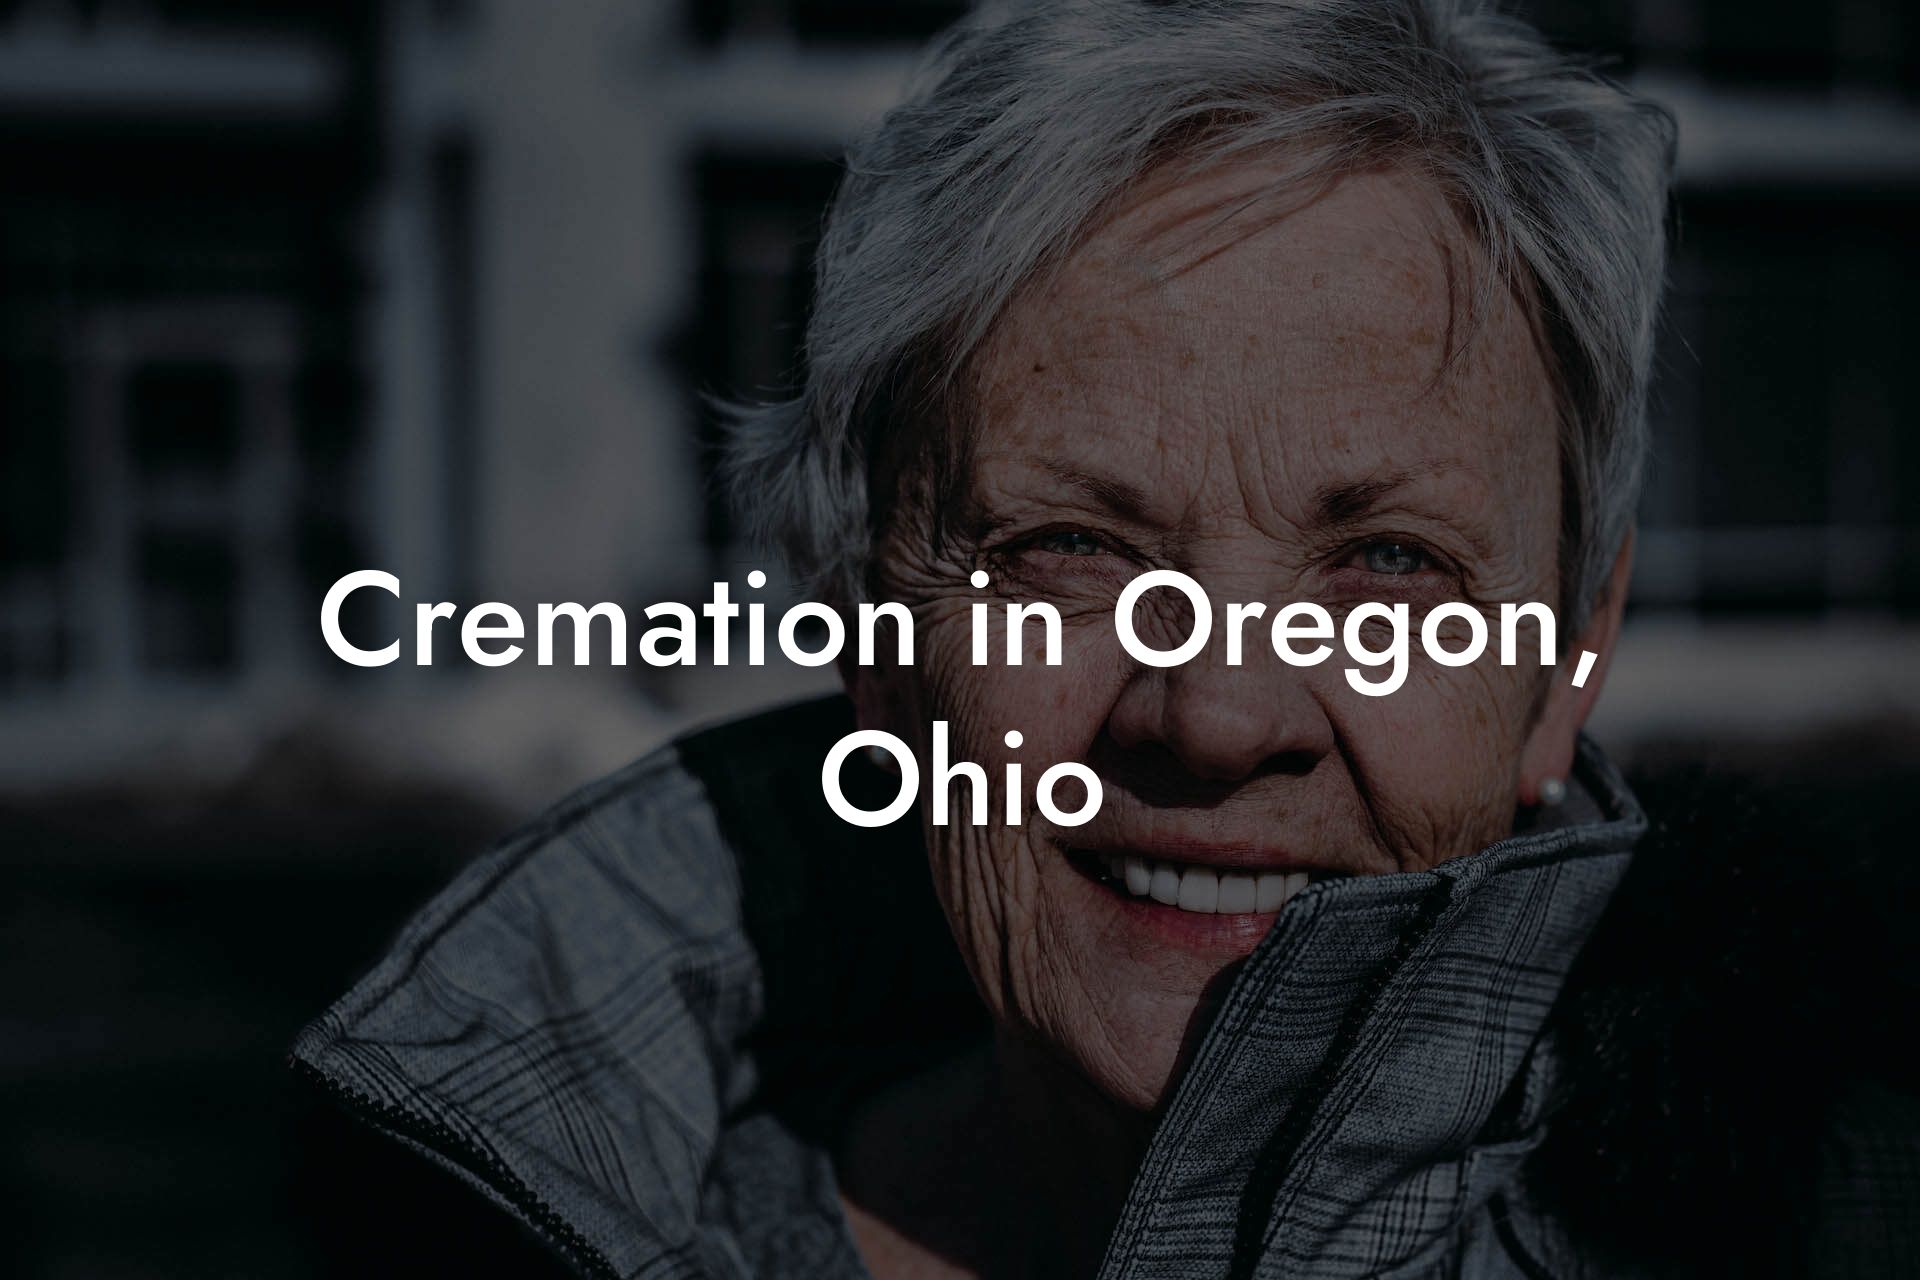 Cremation in Oregon, Ohio